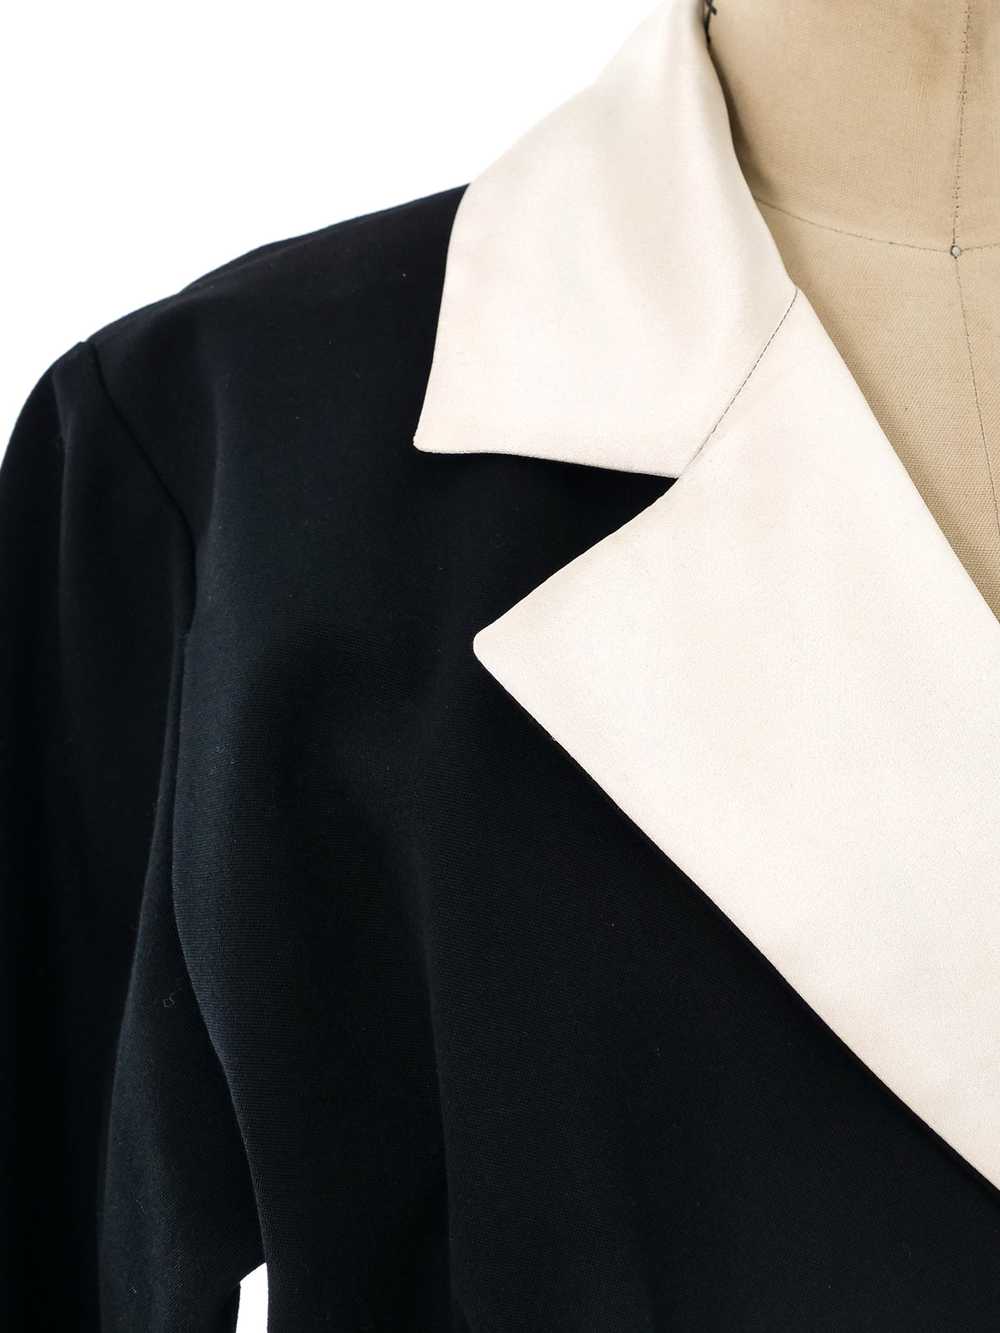 Yves Saint Laurent Tuxedo Dress - image 6